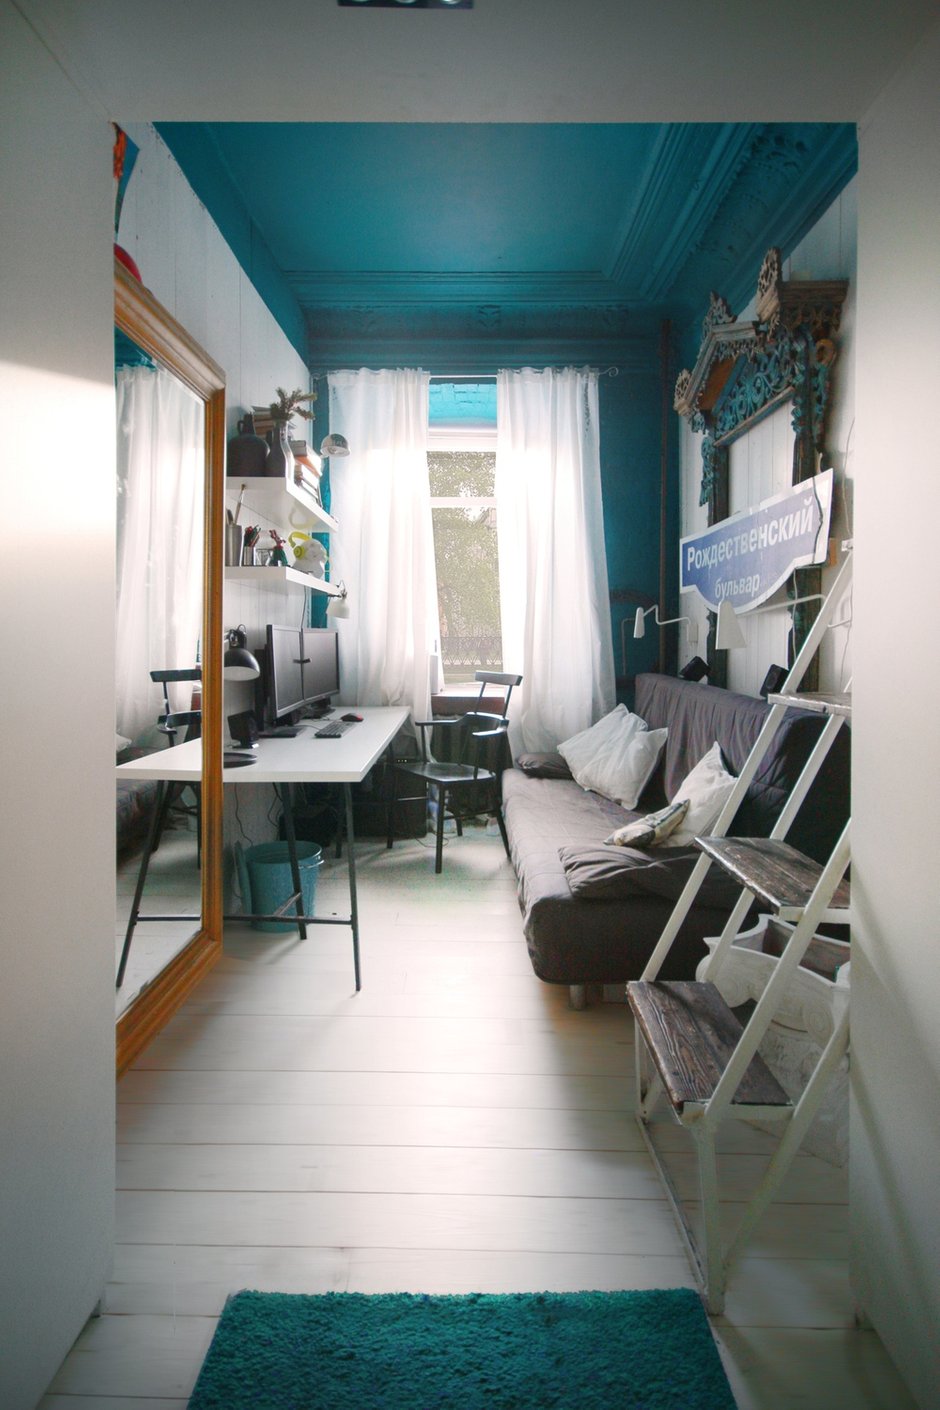 Фотография: Офис в стиле Современный, Малогабаритная квартира, Квартира, Цвет в интерьере, Дома и квартиры, Белый, Бирюзовый – фото на INMYROOM